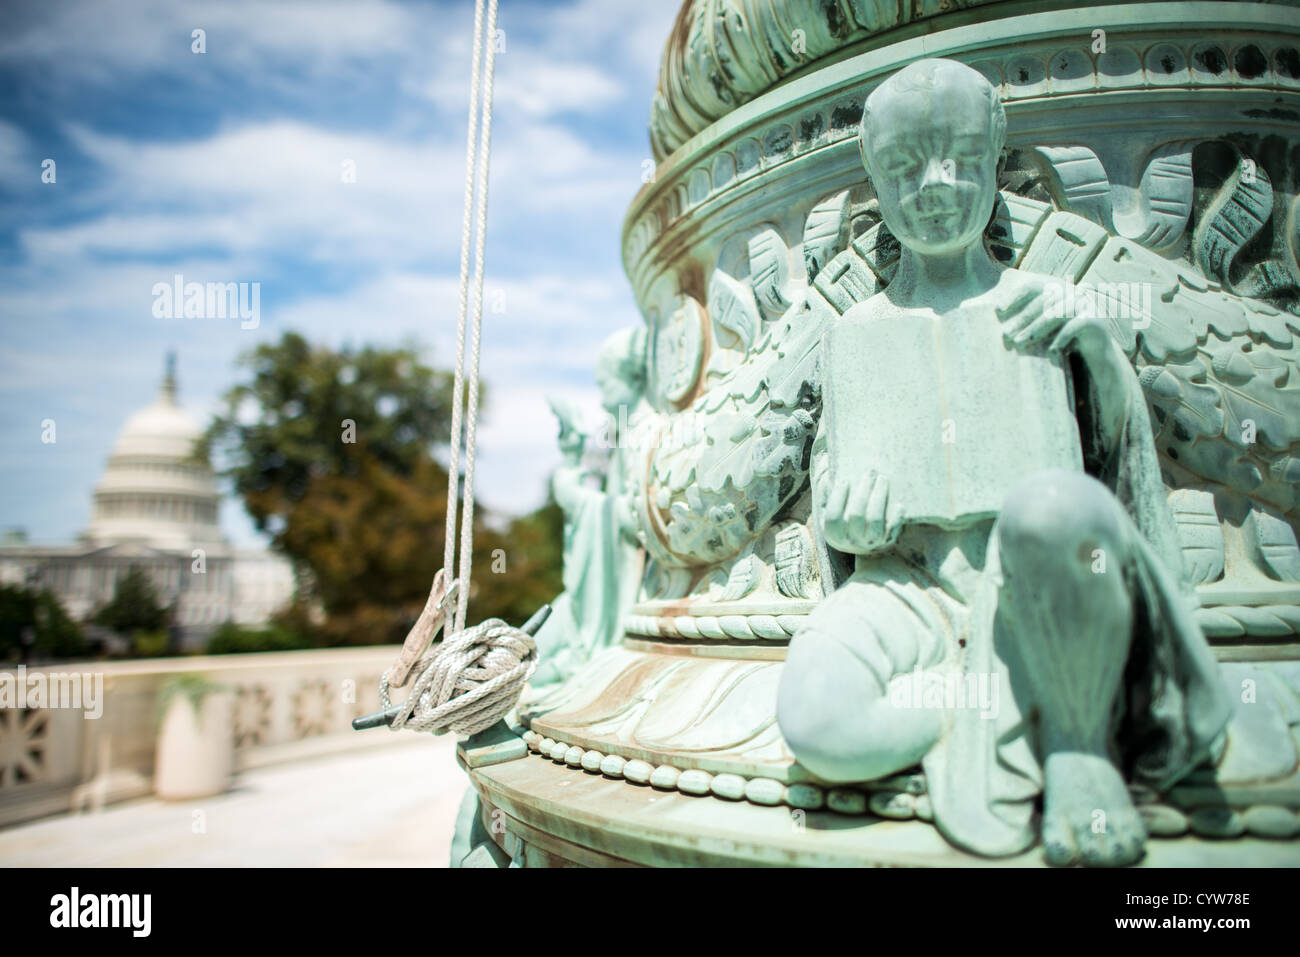 WASHINGTON DC, USA - Höchstes Gericht Flag Pole Skulptur mit Capitol Dome. Dekorative Skulpturen auf der Basis eines der fahnenmasten stehen auf der Plaza vor dem Obersten Gerichtshof der Vereinigten Staaten, Gebäude auf dem Capitol Hill. Im Hintergrund, in der Frame links, ist die US-Kapitol Kuppel. Stockfoto